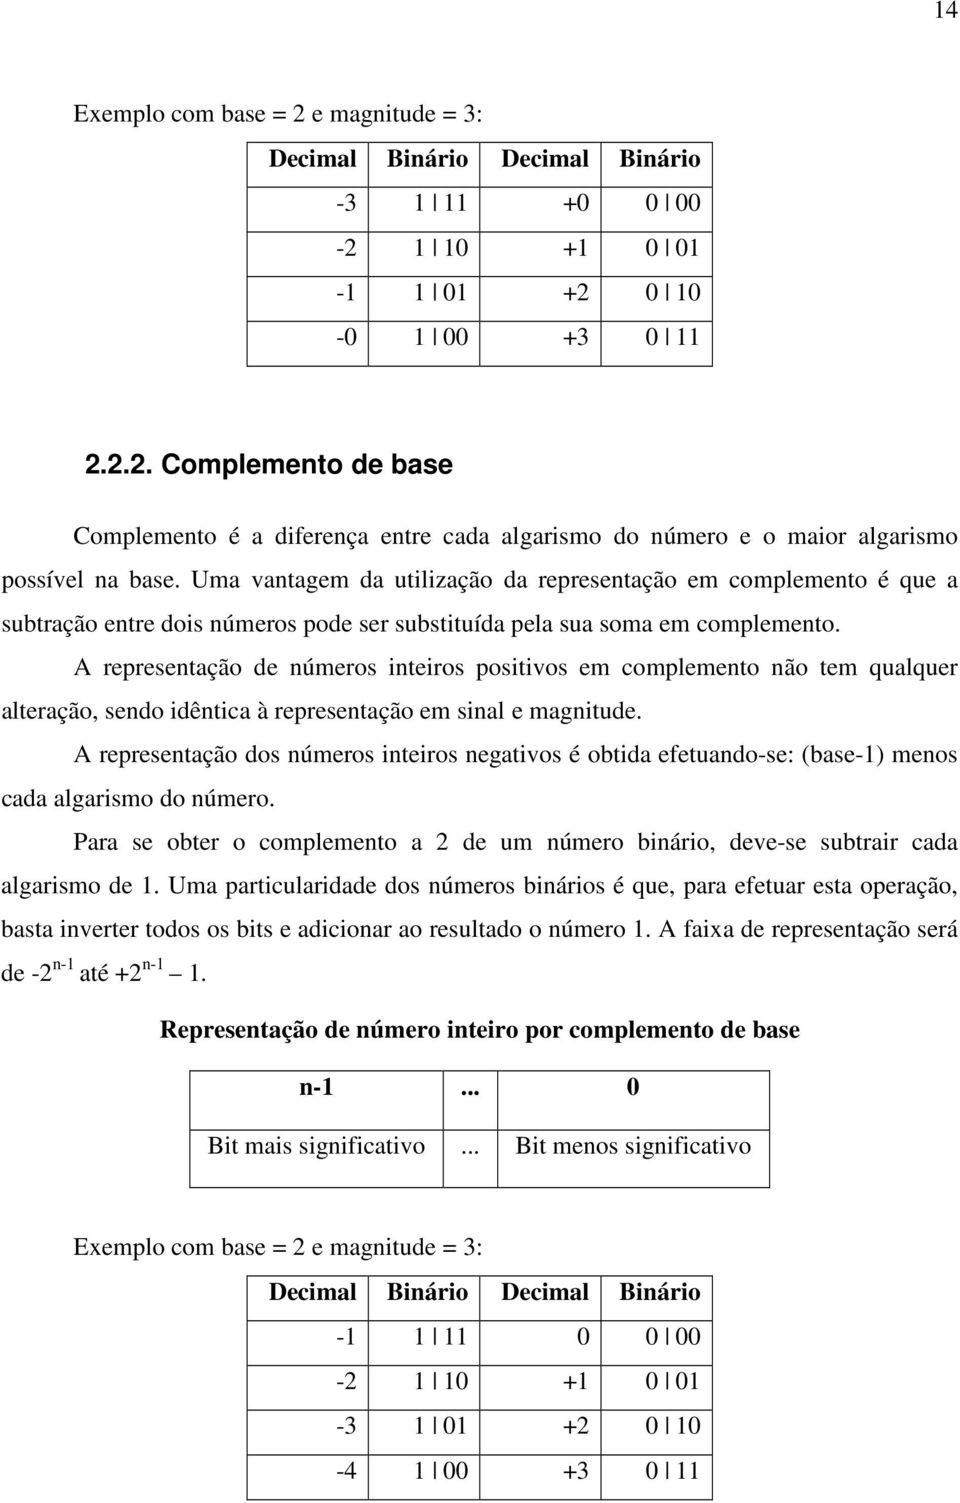 A representação de números inteiros positivos em complemento não tem qualquer alteração, sendo idêntica à representação em sinal e magnitude.